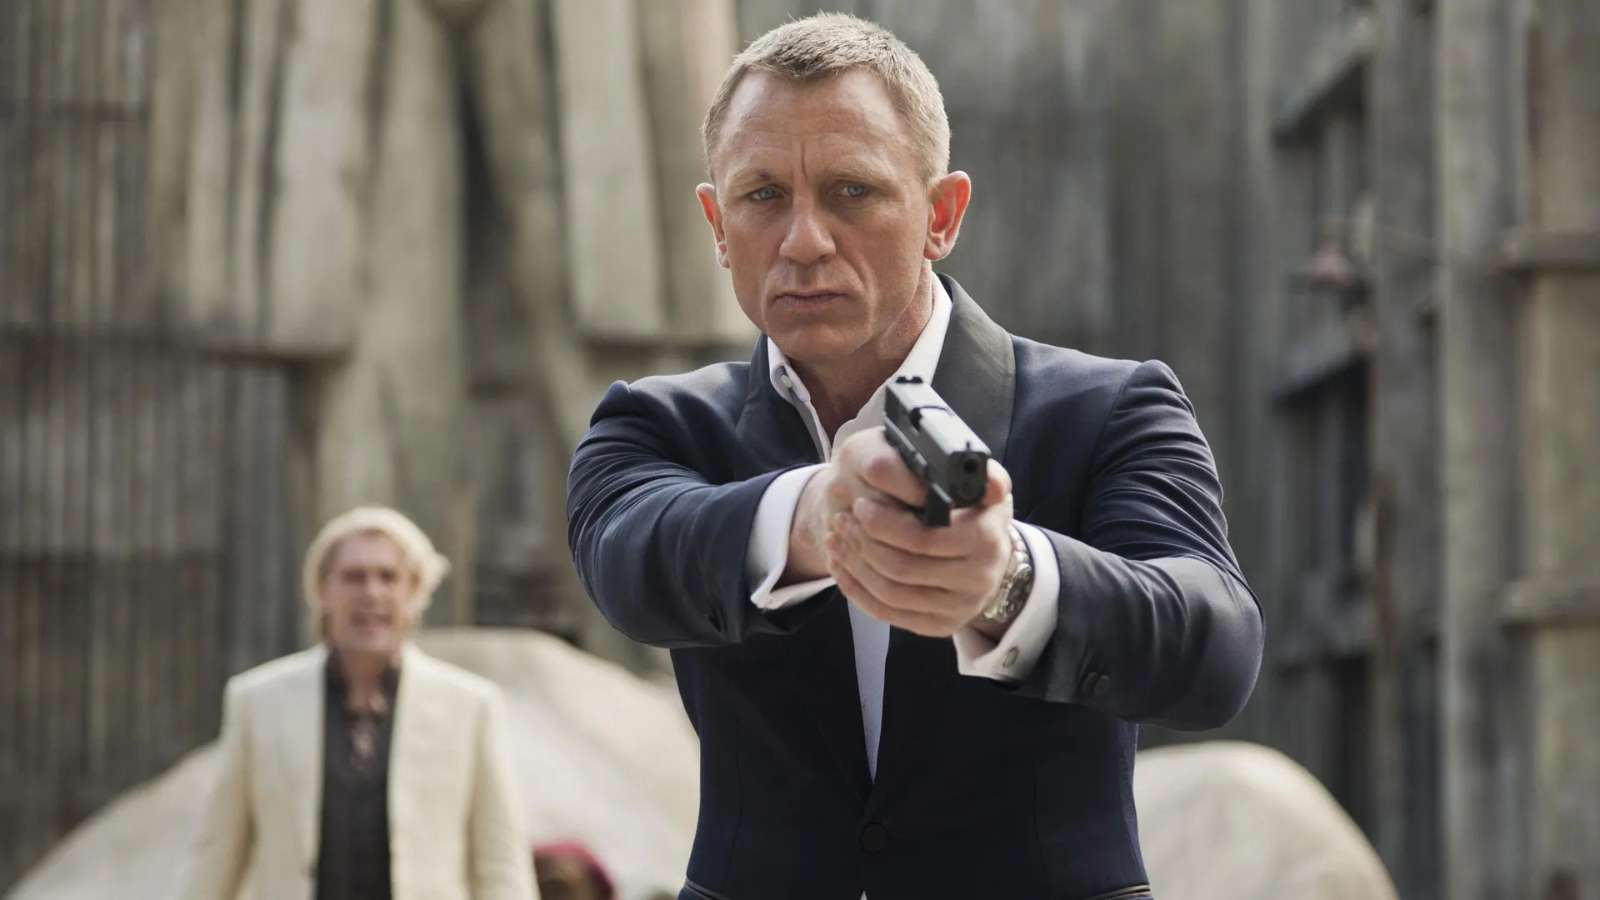 Daniel Craig as James Bond pointing a gun at someone